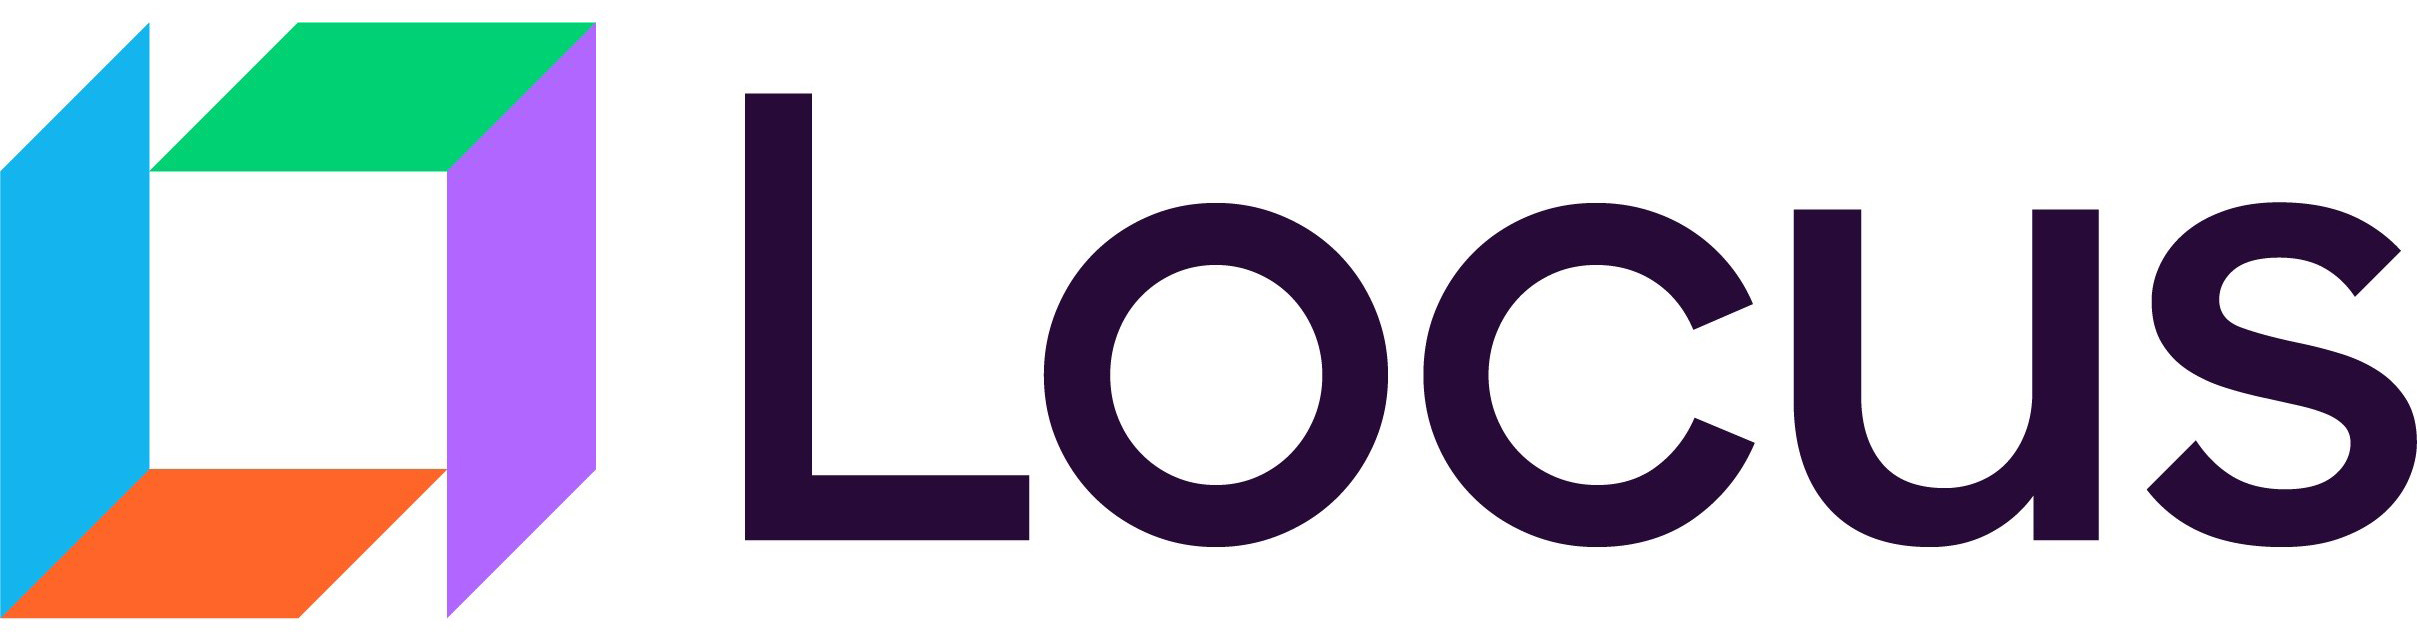 locus_logo